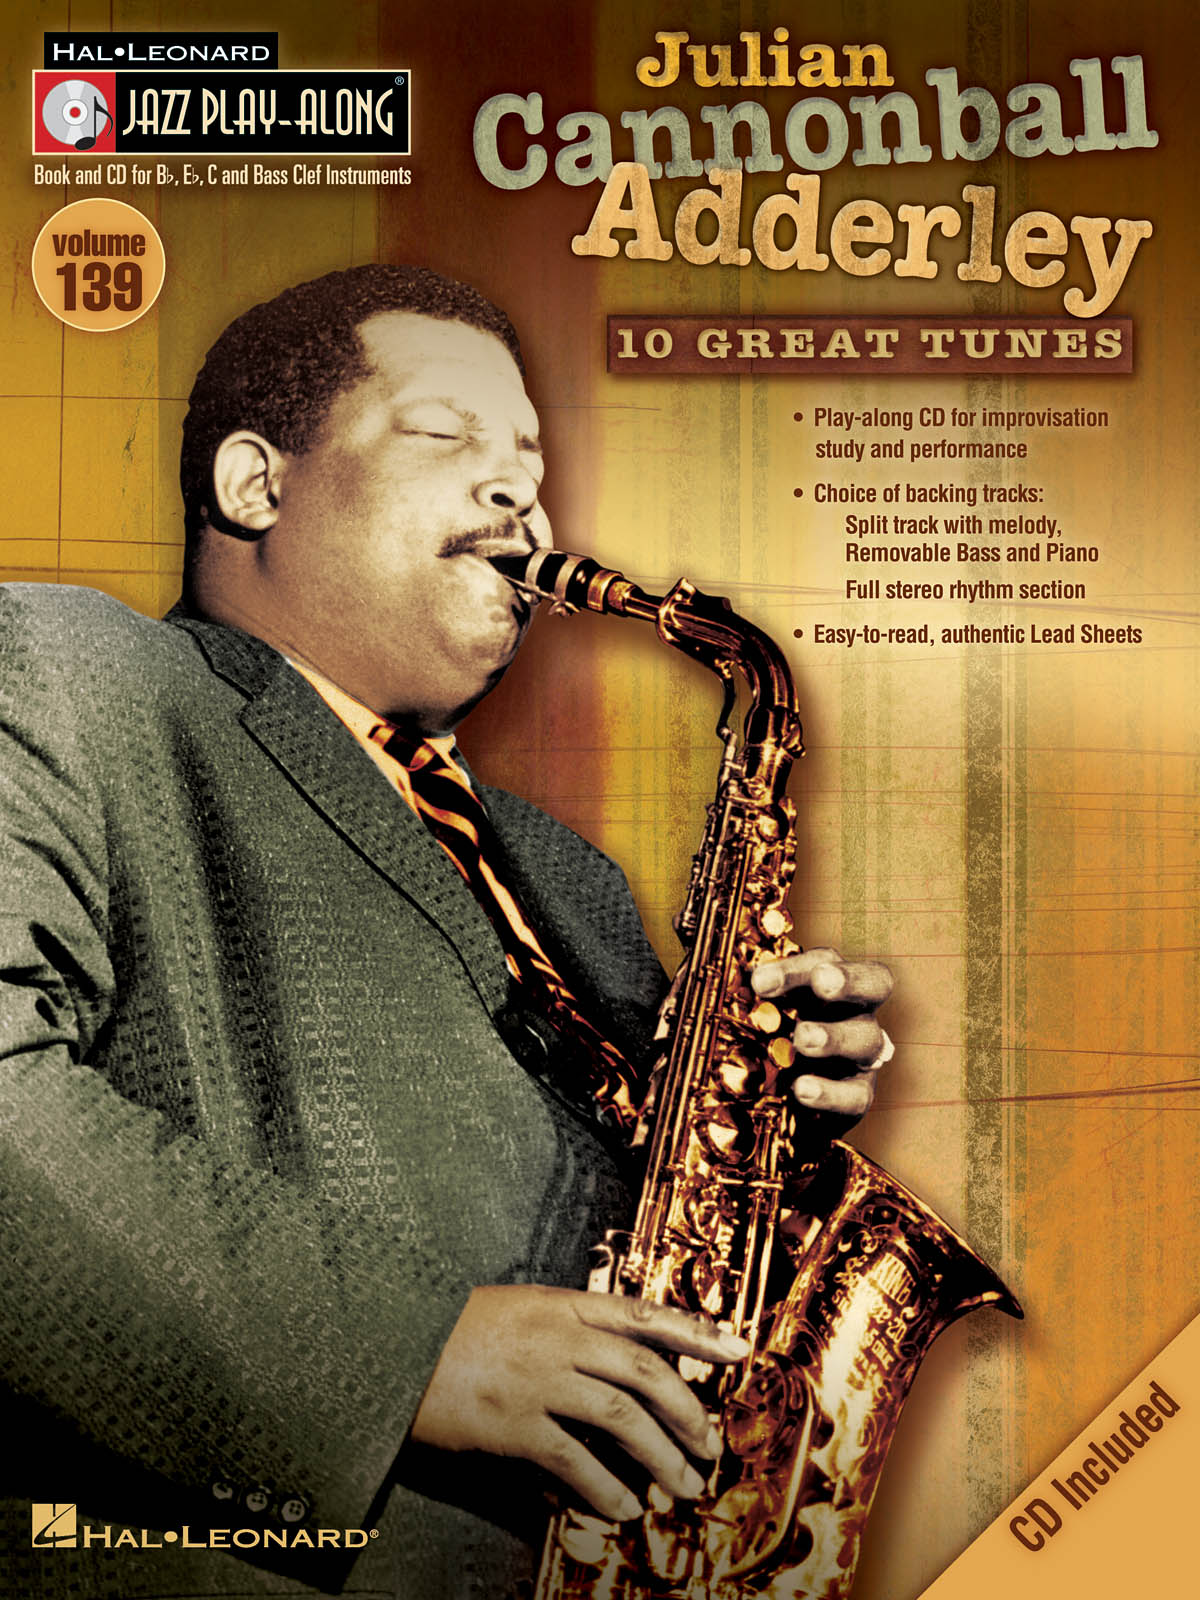 Julian Cannonball Adderley - Jazz Play-Along Volume 139 - melodie s akordy pro nástroje v ladění C